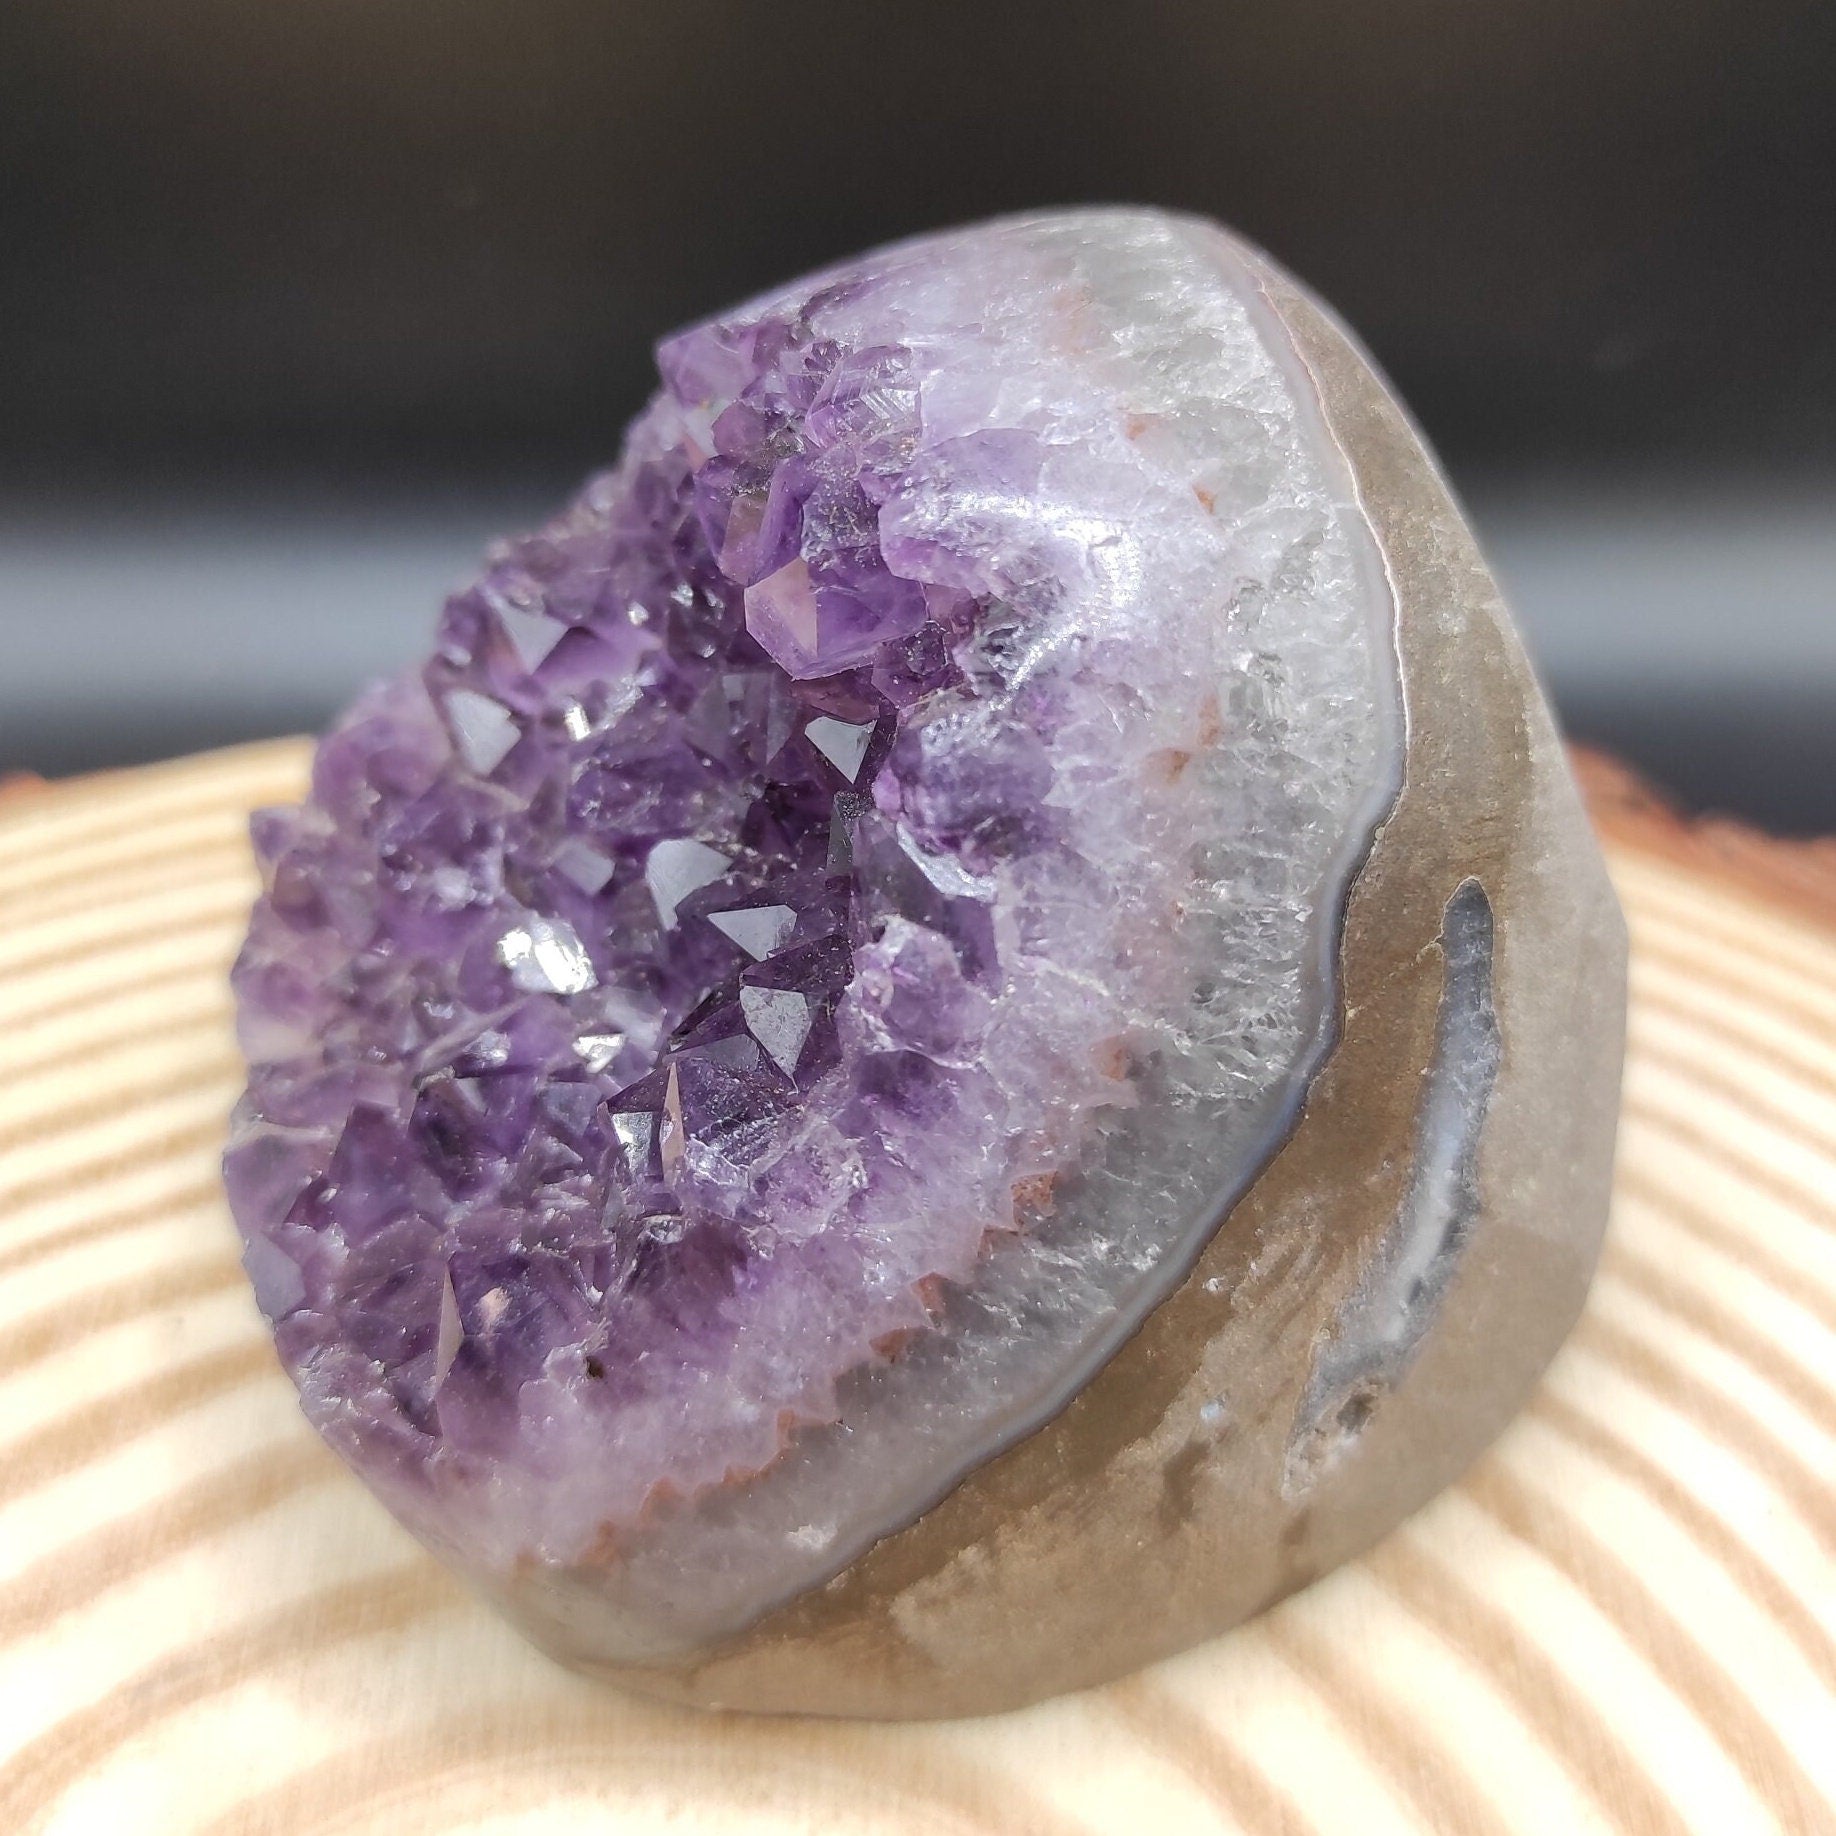 382g Amethyst Geode Cluster Purple Amethyst from South Brazil Amethyst Gemstone Raw Amethyst Rough Amethyst Desk Crystal Natural Crystals